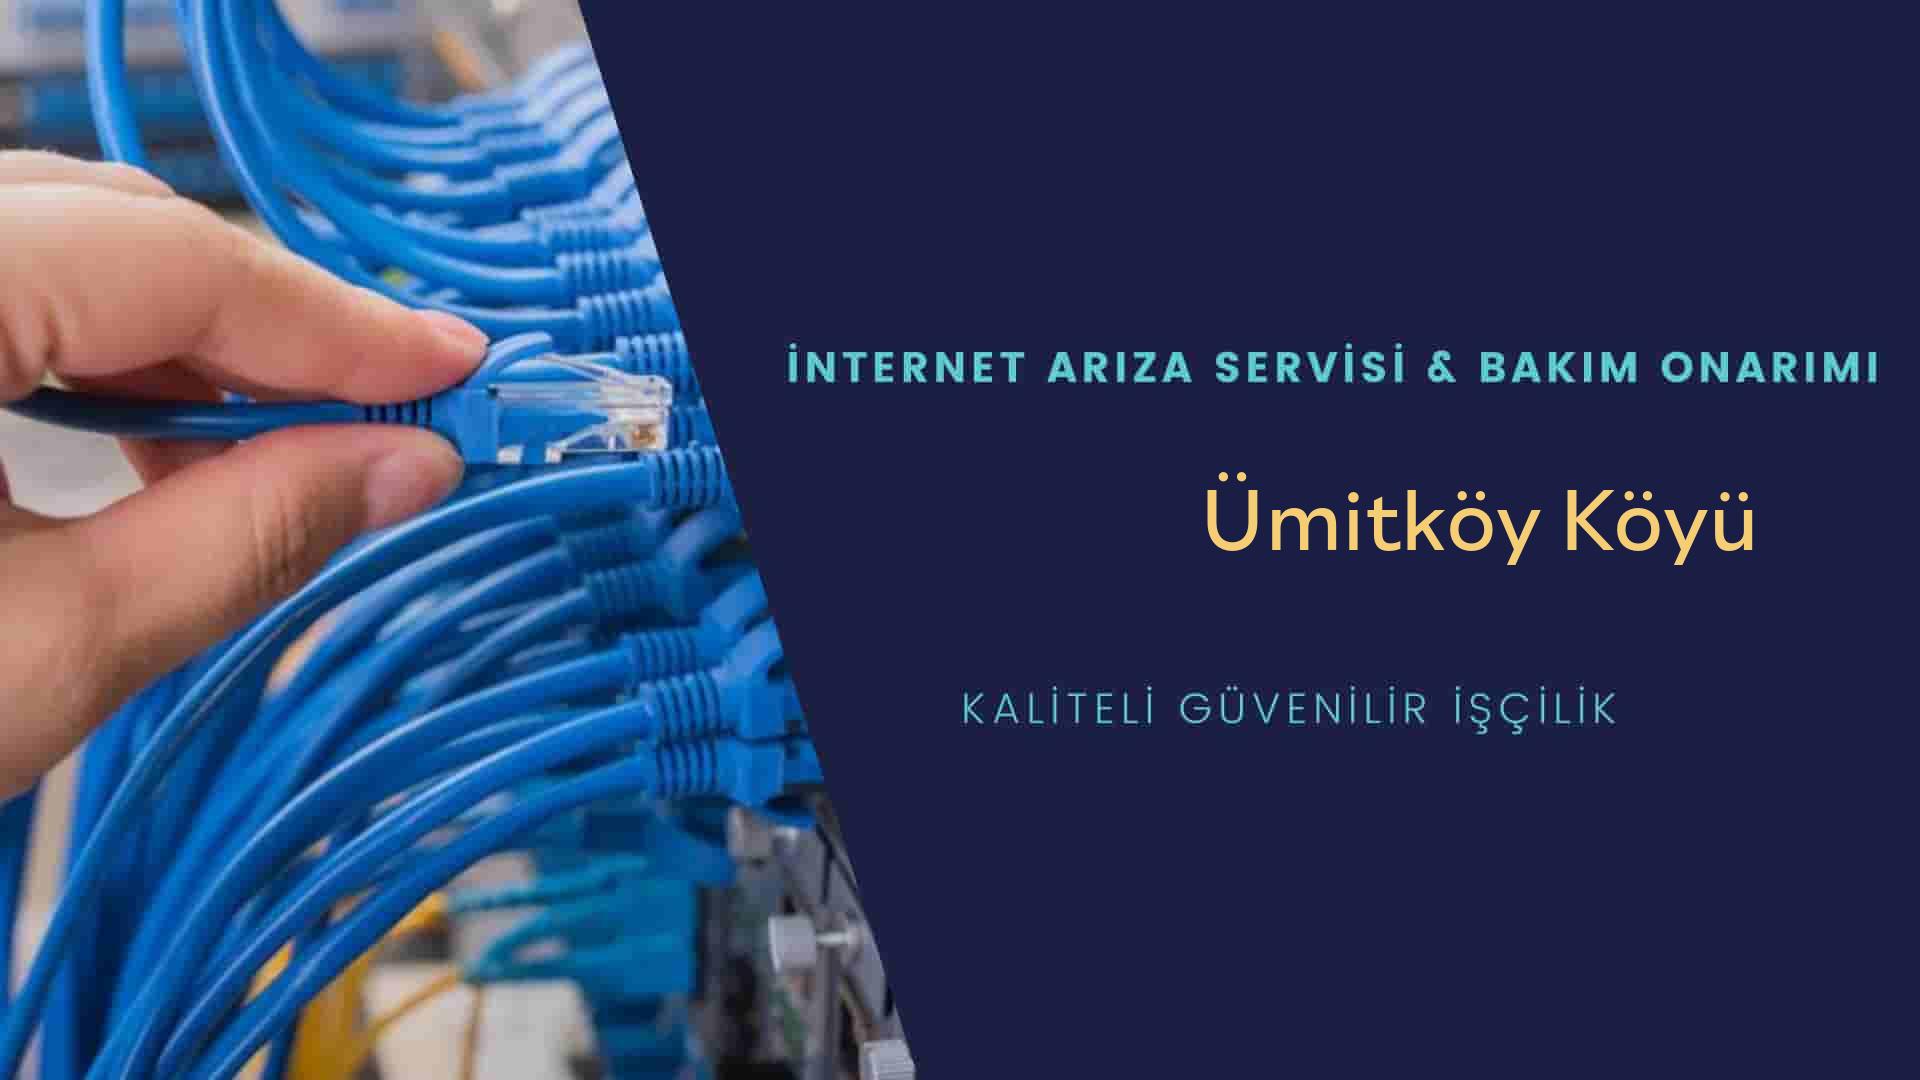 Ümitköy Köyü internet kablosu çekimi yapan yerler veya elektrikçiler mi? arıyorsunuz doğru yerdesiniz o zaman sizlere 7/24 yardımcı olacak profesyonel ustalarımız bir telefon kadar yakındır size.